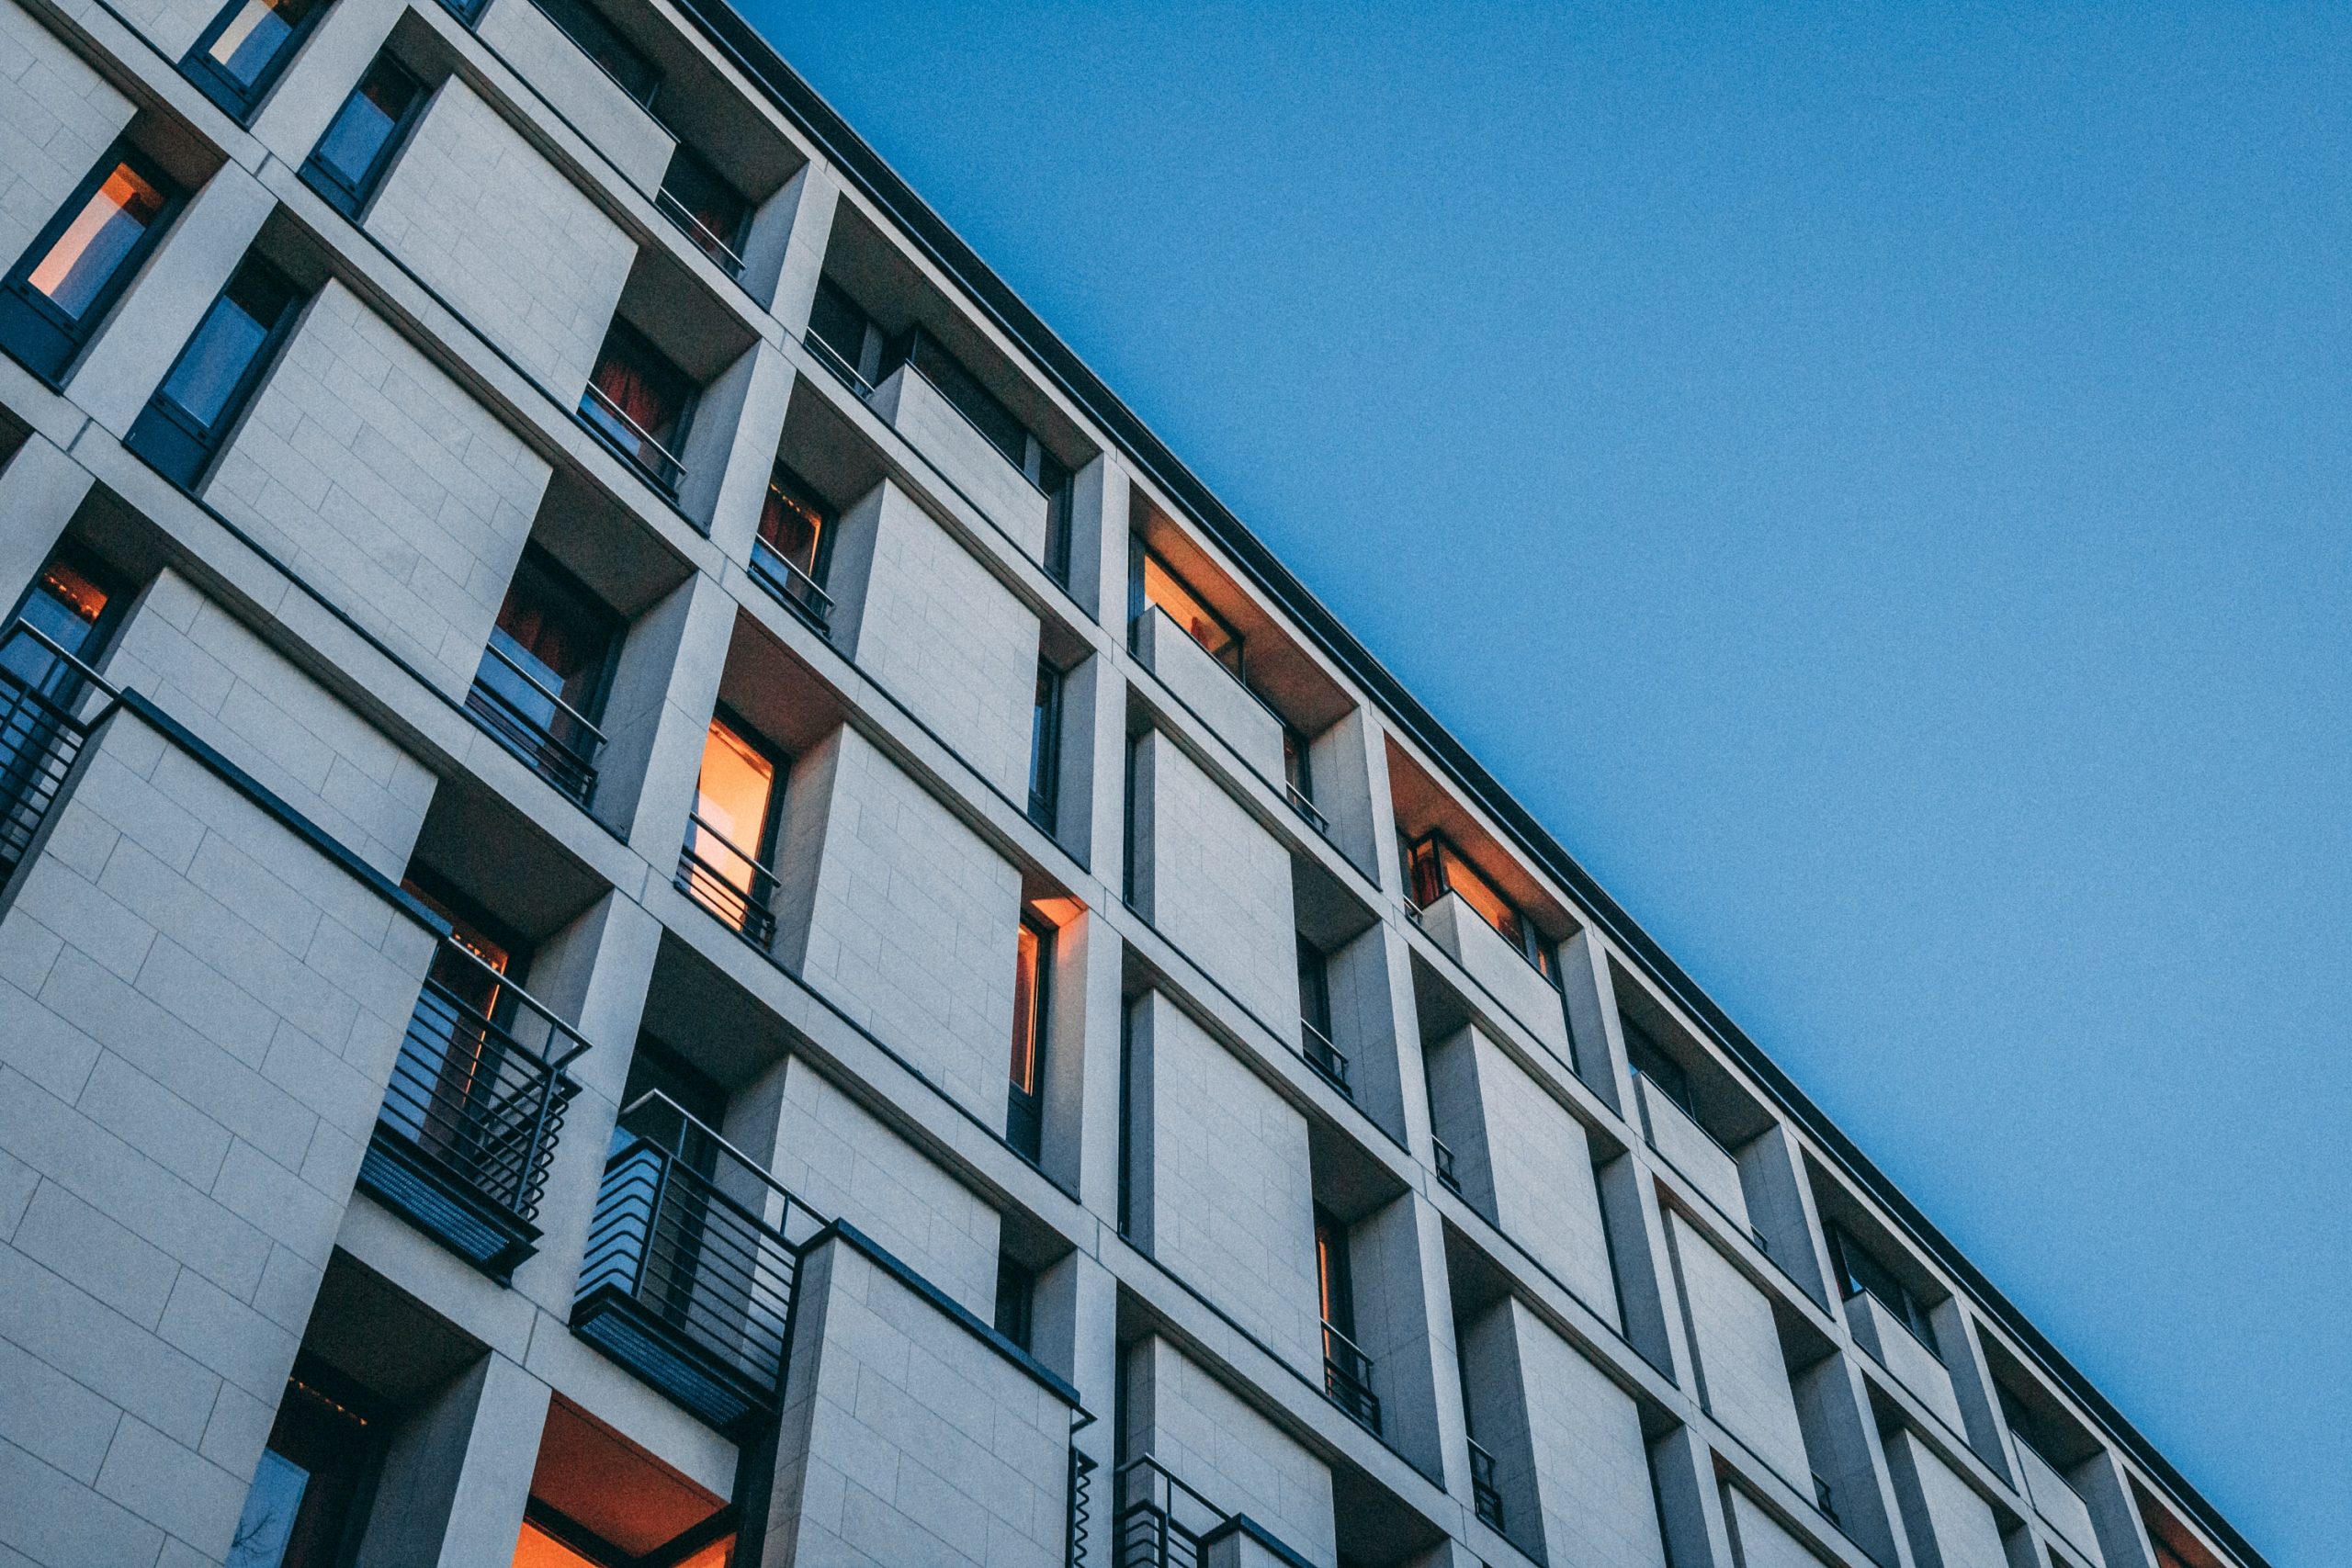 Edifício moderno de alojamento estudantil ao entardecer, com o brilho quente das luzes visíveis de algumas das janelas contra o azul frio do céu noturno.